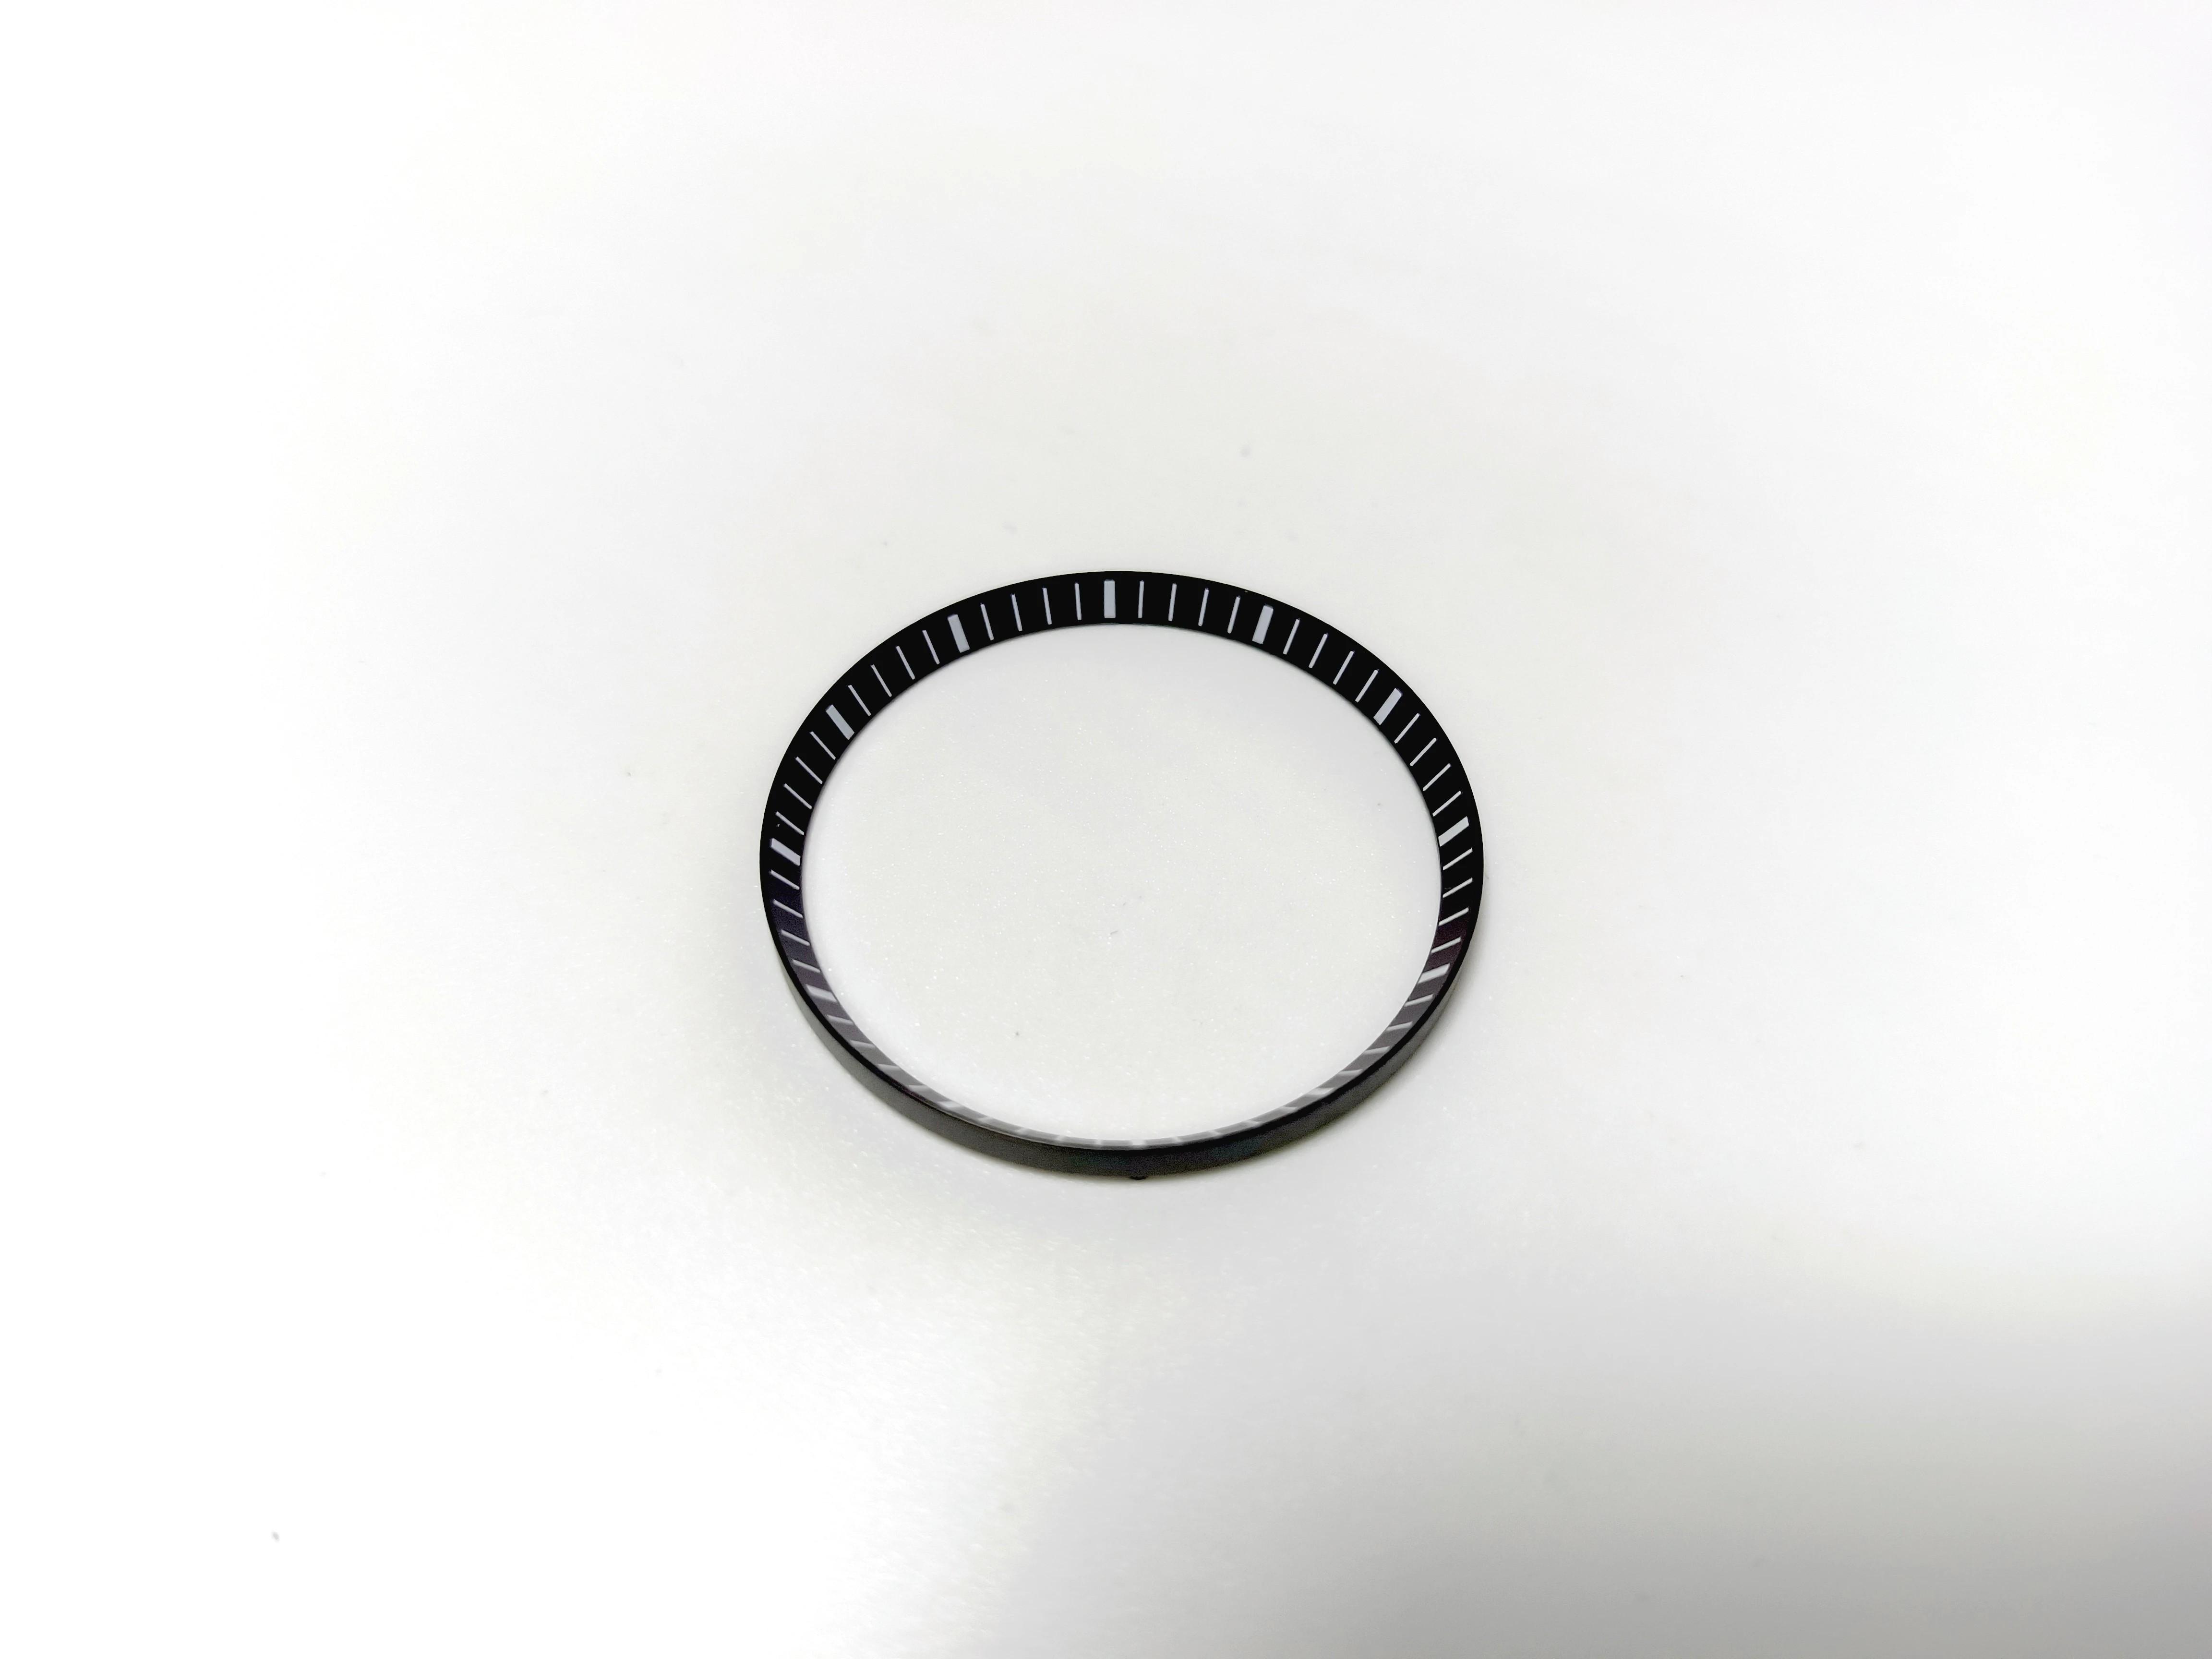 Mod 30.5mm Matte Brushed Polished SKX007 Chapter Ring Fit For SKX007 NH35 NH36 Movement Men's Diving Watch enlarge